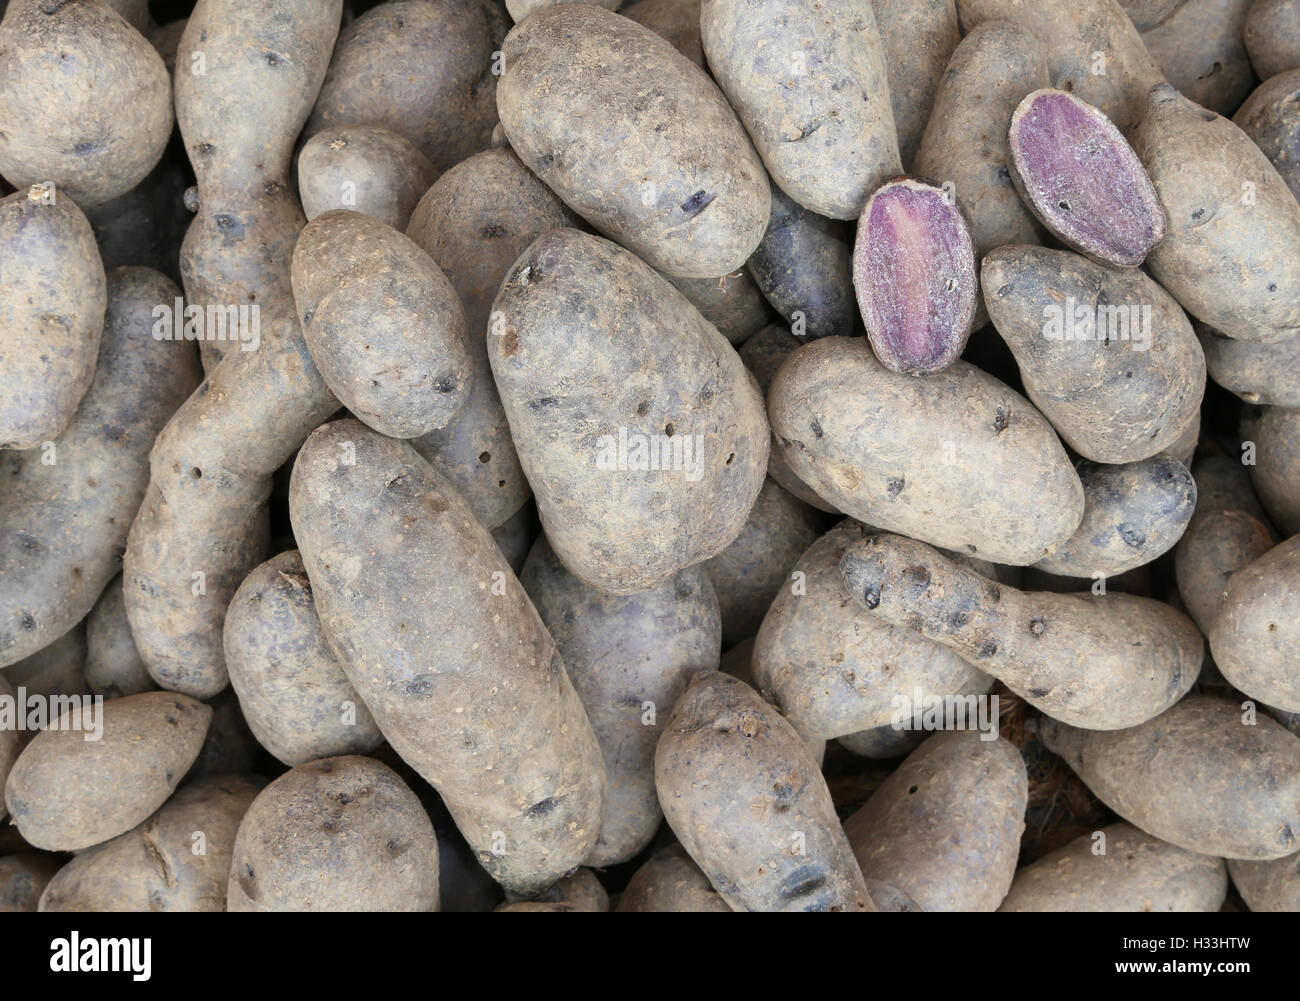 Hintergrund der rohen Kartoffeln zum Verkauf im Lebensmittelhandel Stockfoto